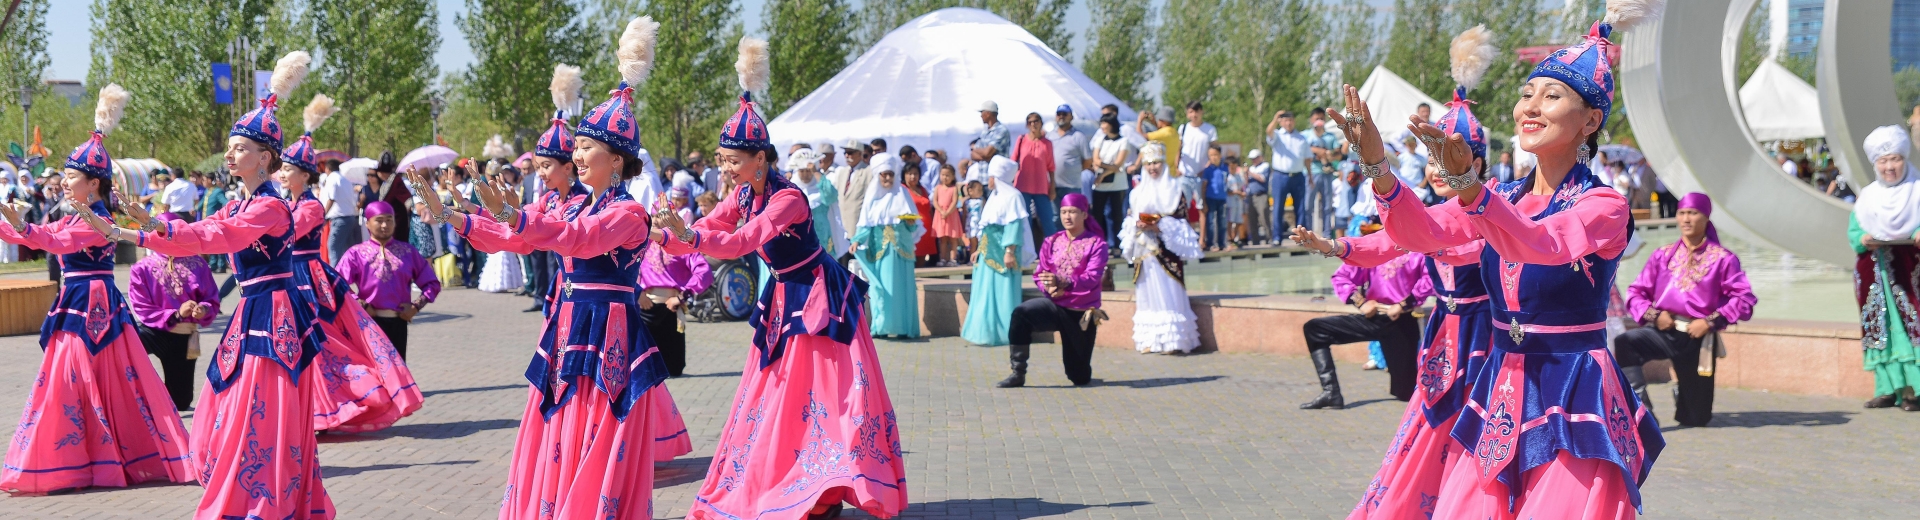 Астанада өткен жылы 9926 мәдени іс-шара өткізілді